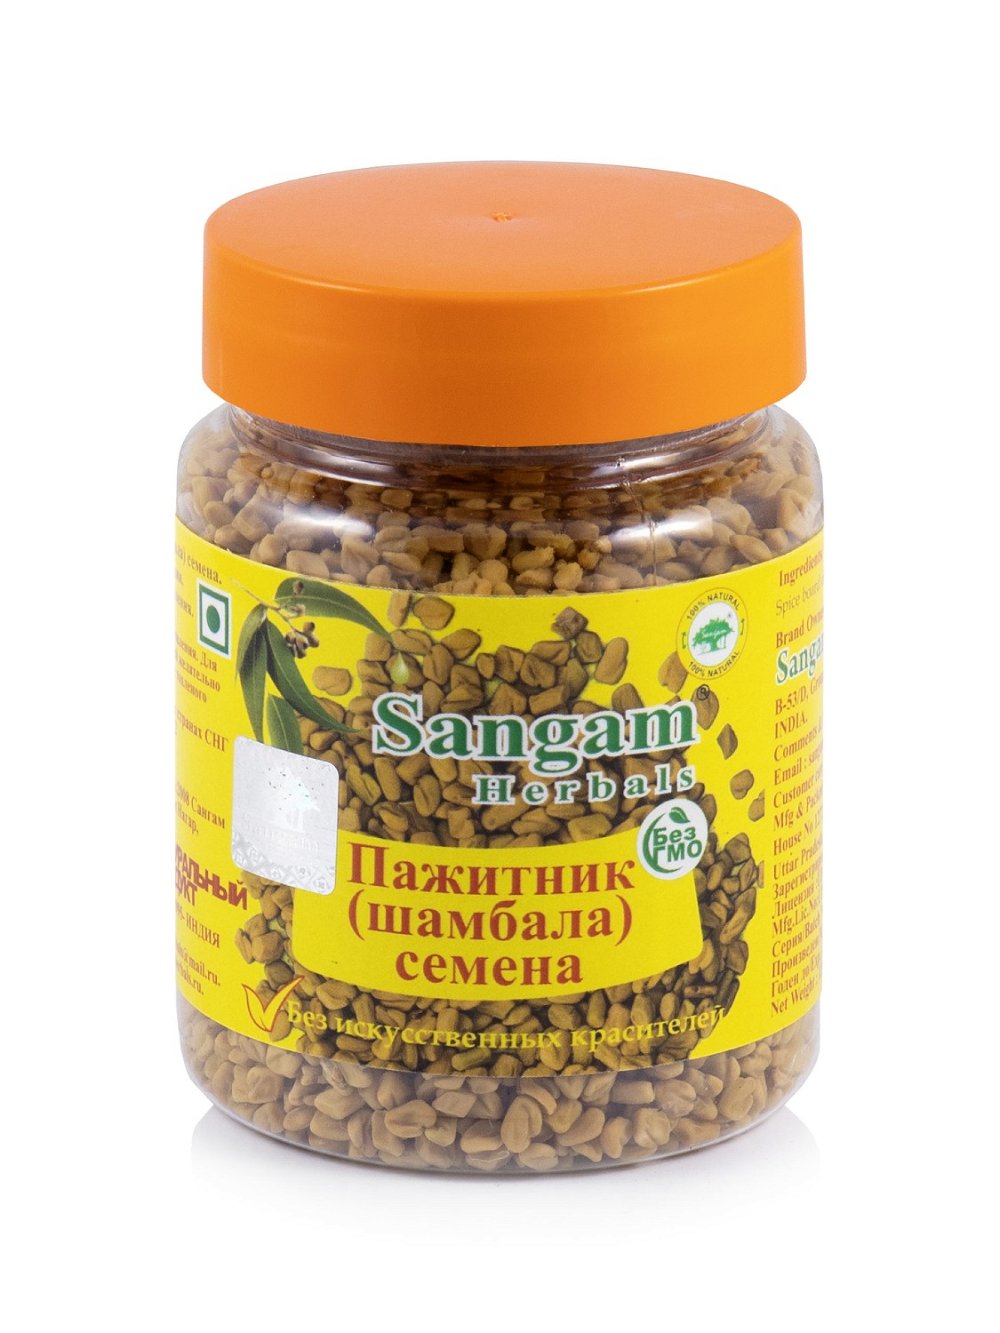 Пажитник (Шамбала) семена Sangam Herbals (120 г), Пажитник (Шамбала) семена